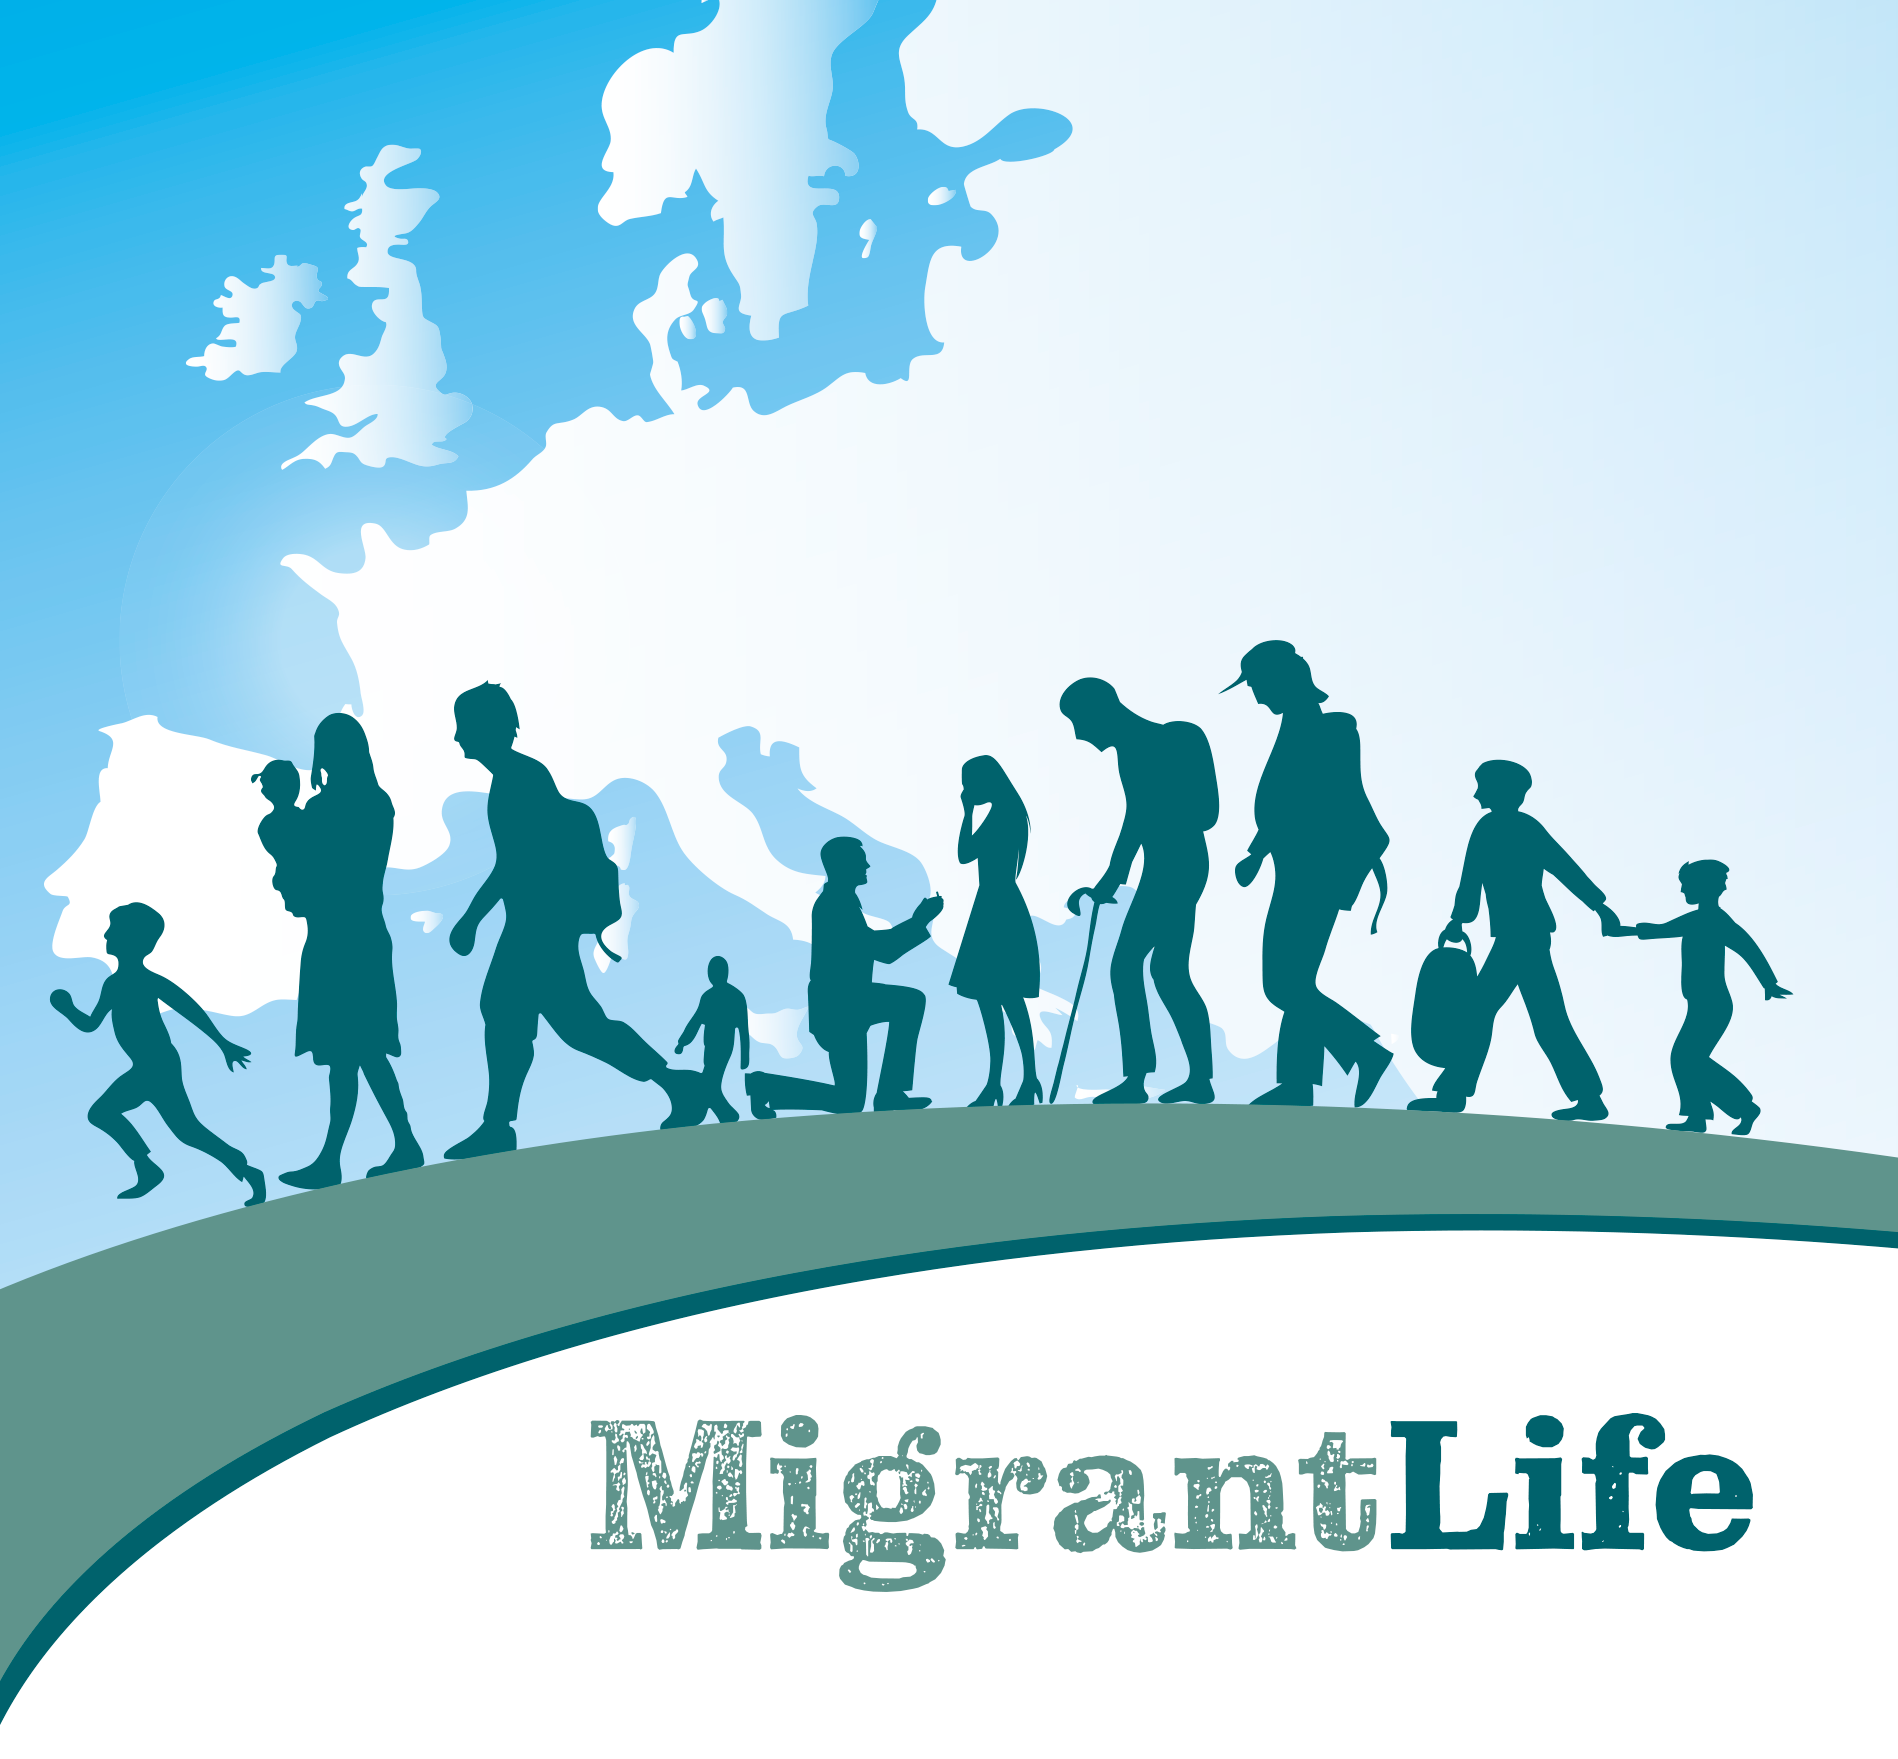 MigrantLife